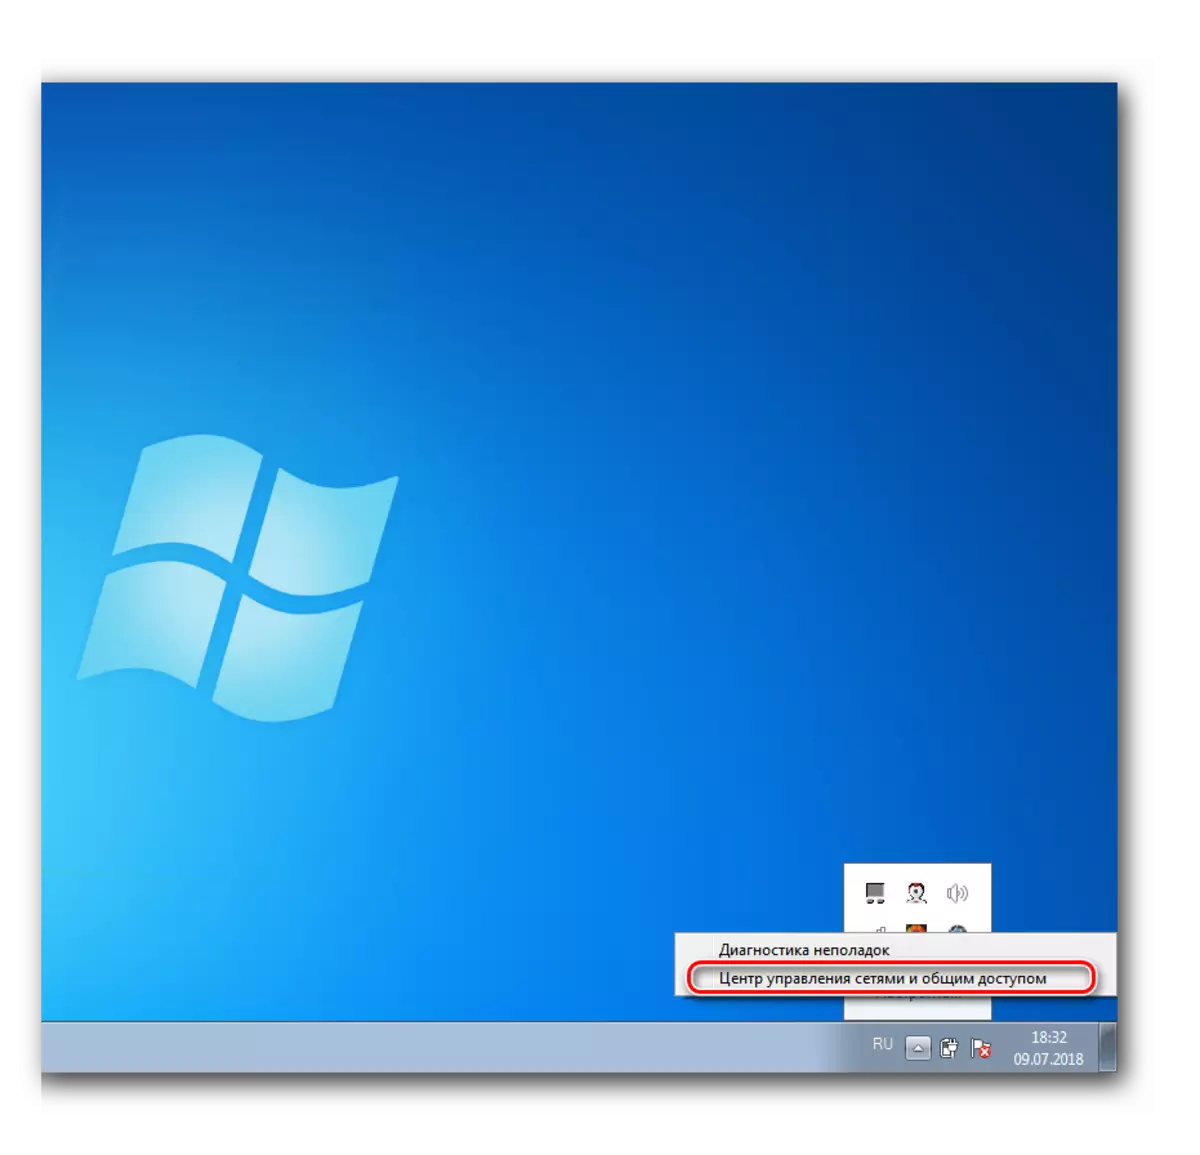 Fetolela setsing sa tsamaiso ea marang-rang ho Windows 7